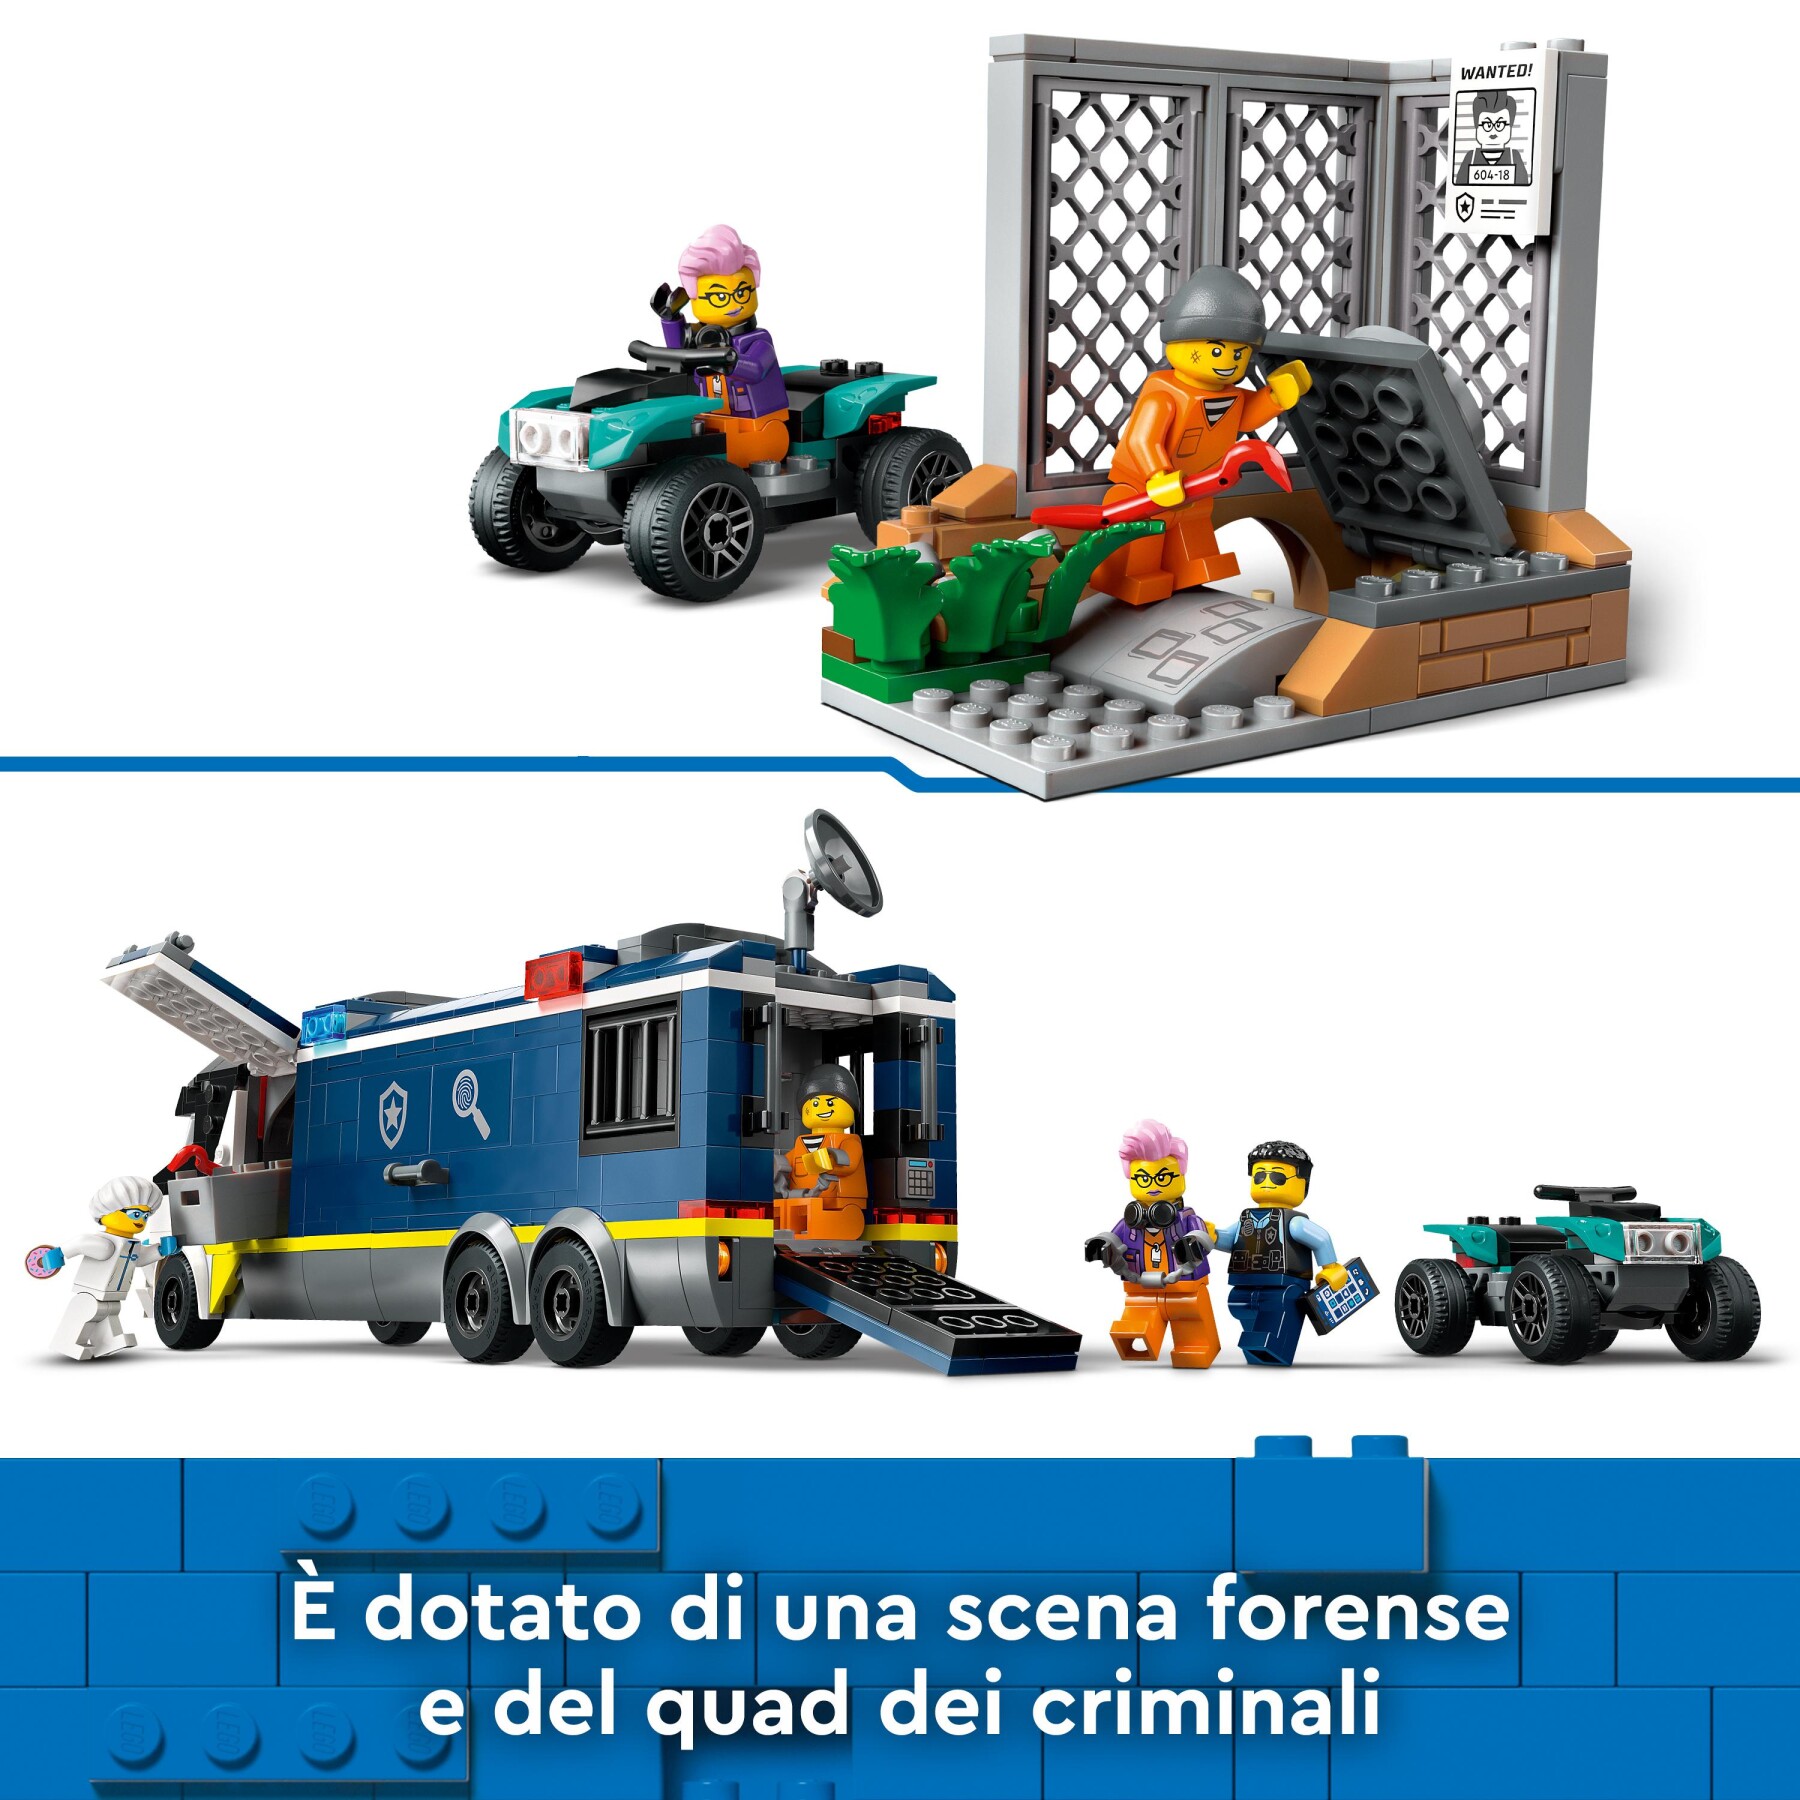 LEGO CITY CAMION LABORATORIO MOBILE DELLA POLIZIA 60418